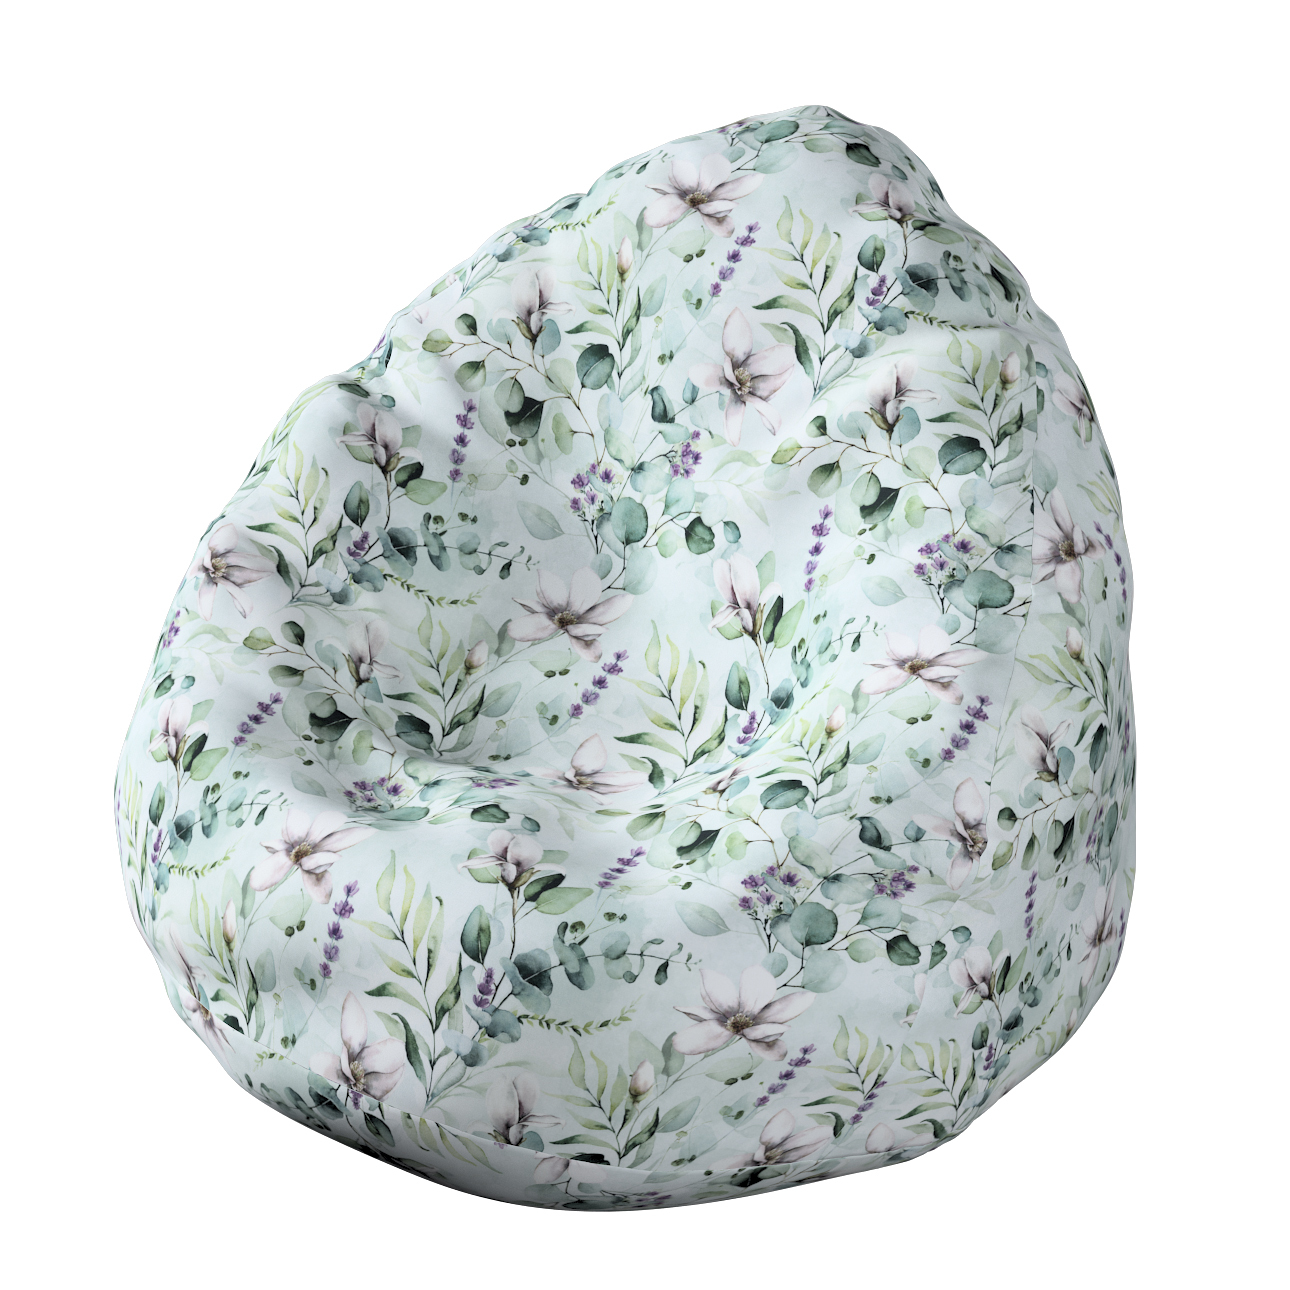 Bezug für Sitzsack, mintgrün-weiß, Bezug für Sitzsack Ø50 x 85 cm, Flowers günstig online kaufen